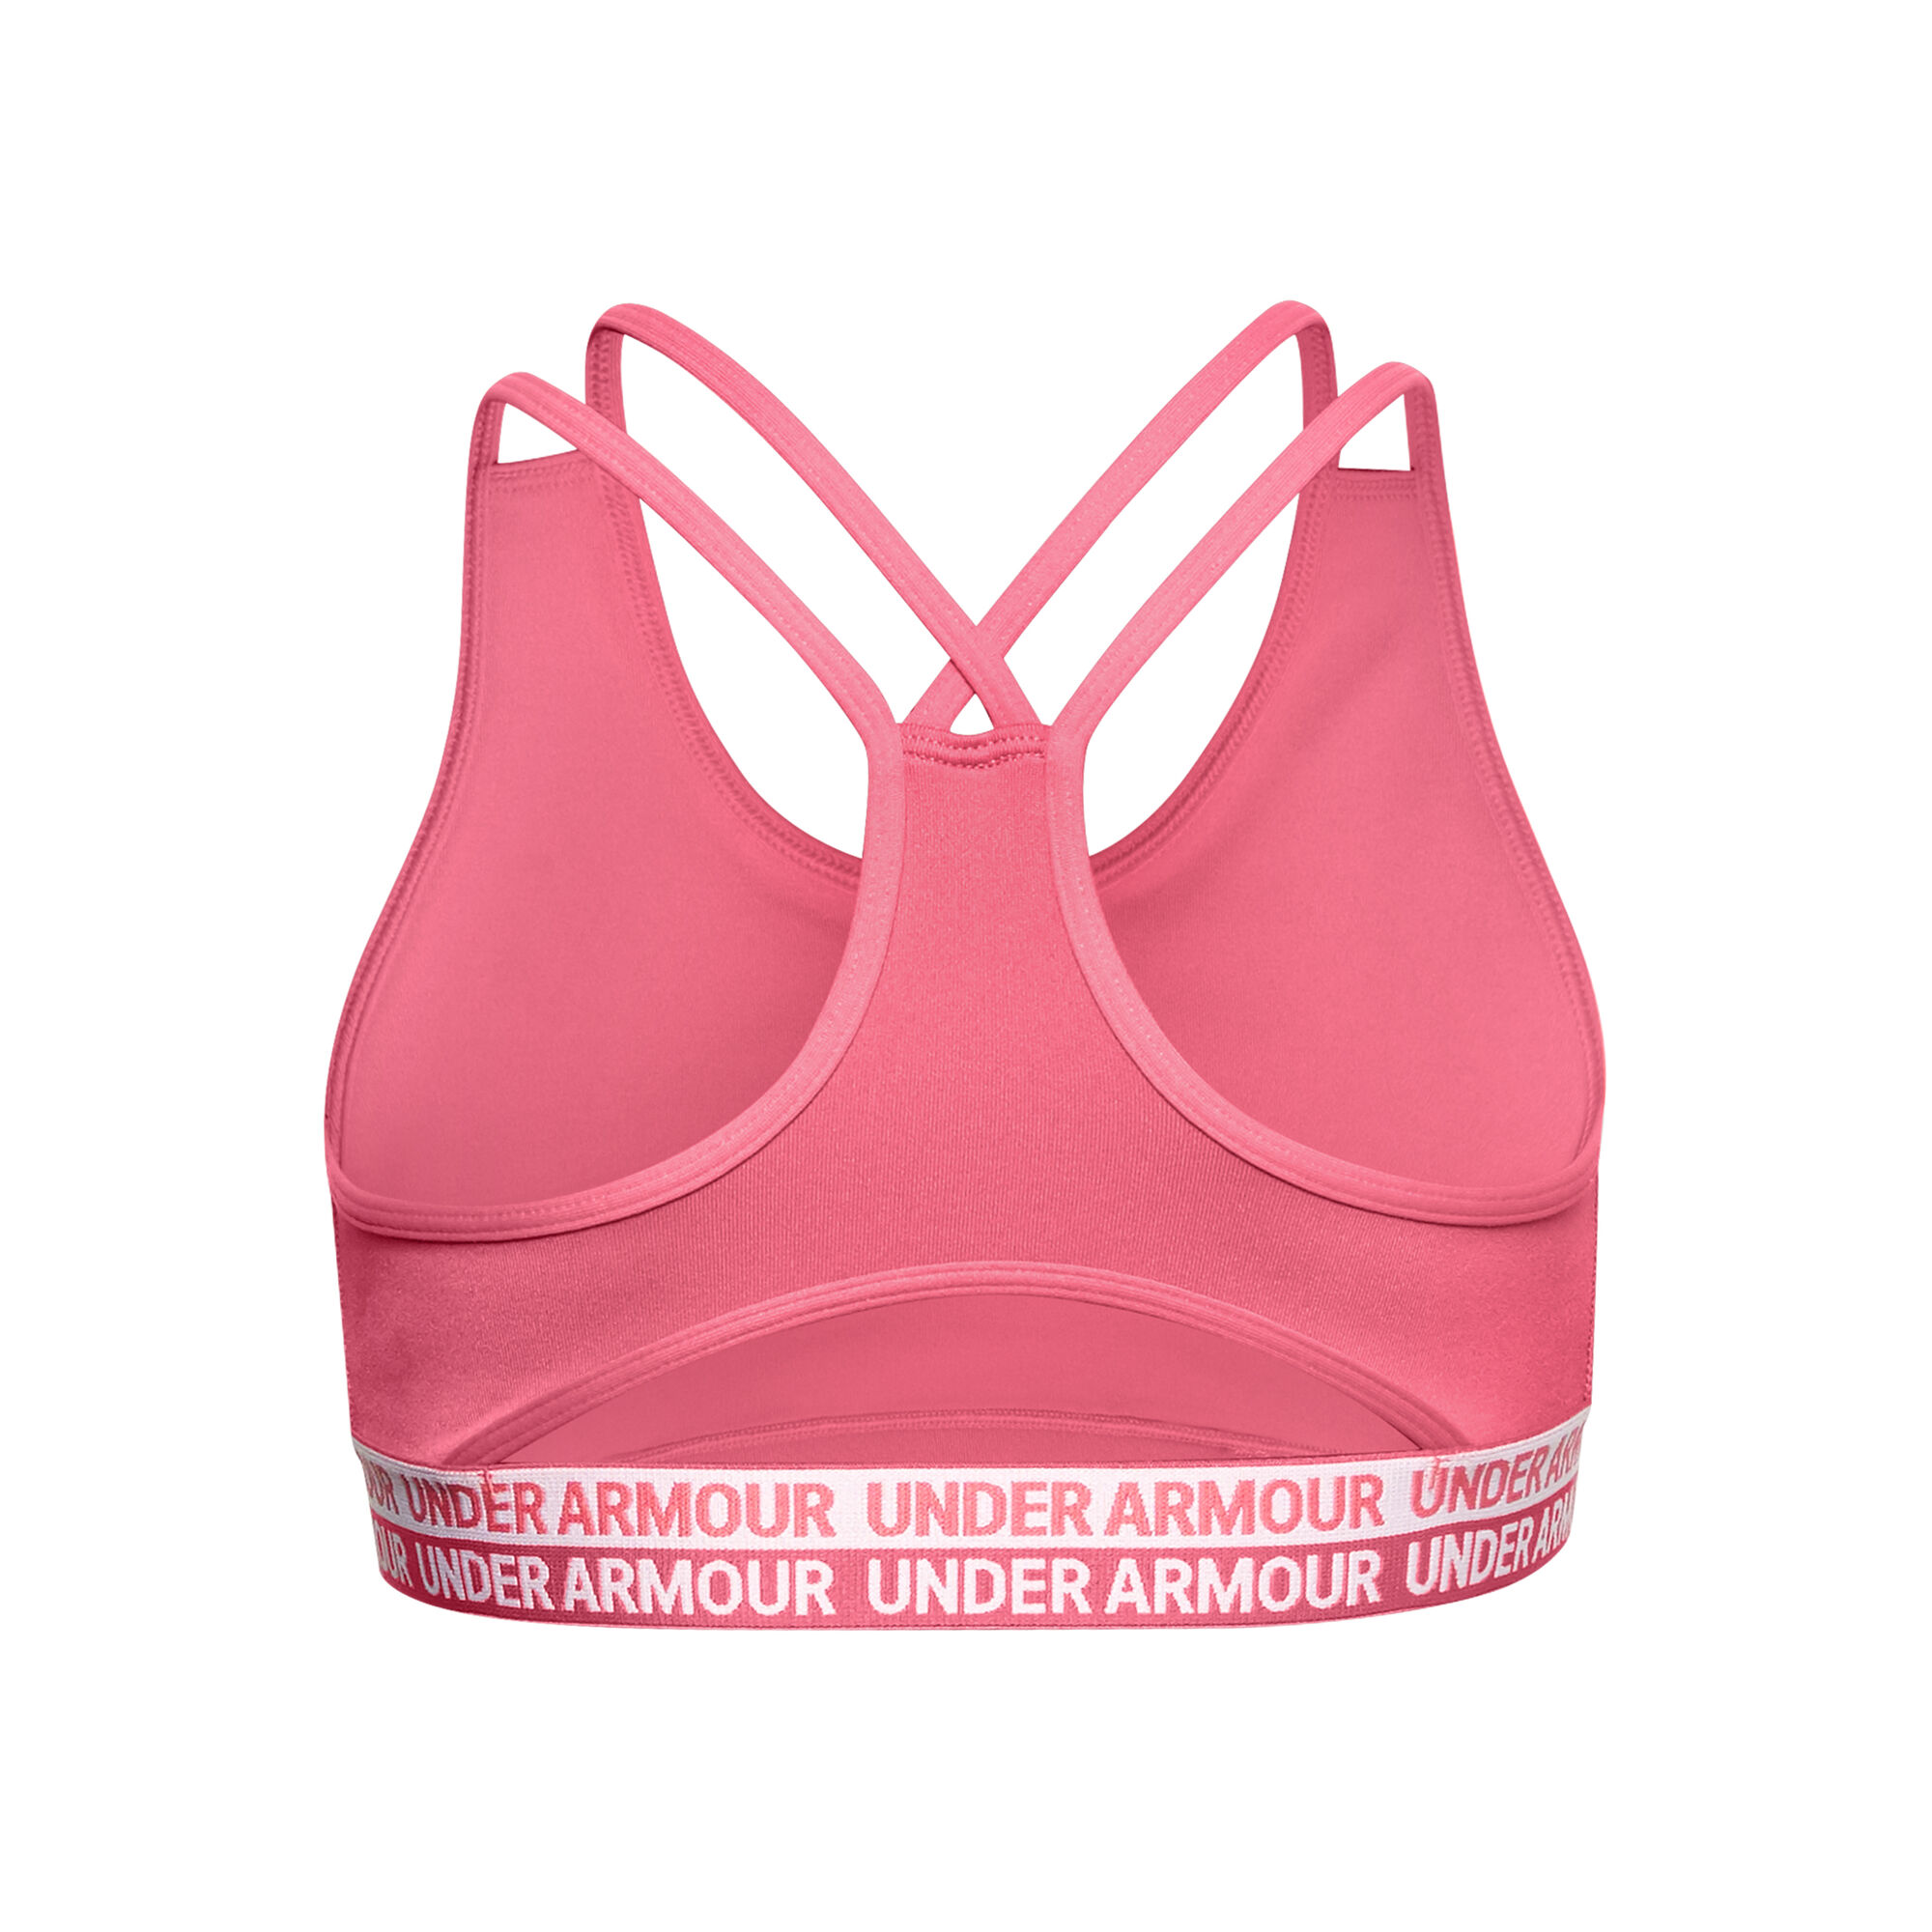 buy Under Armour Heatgear Sports Bras Girls - Pink, White online ...